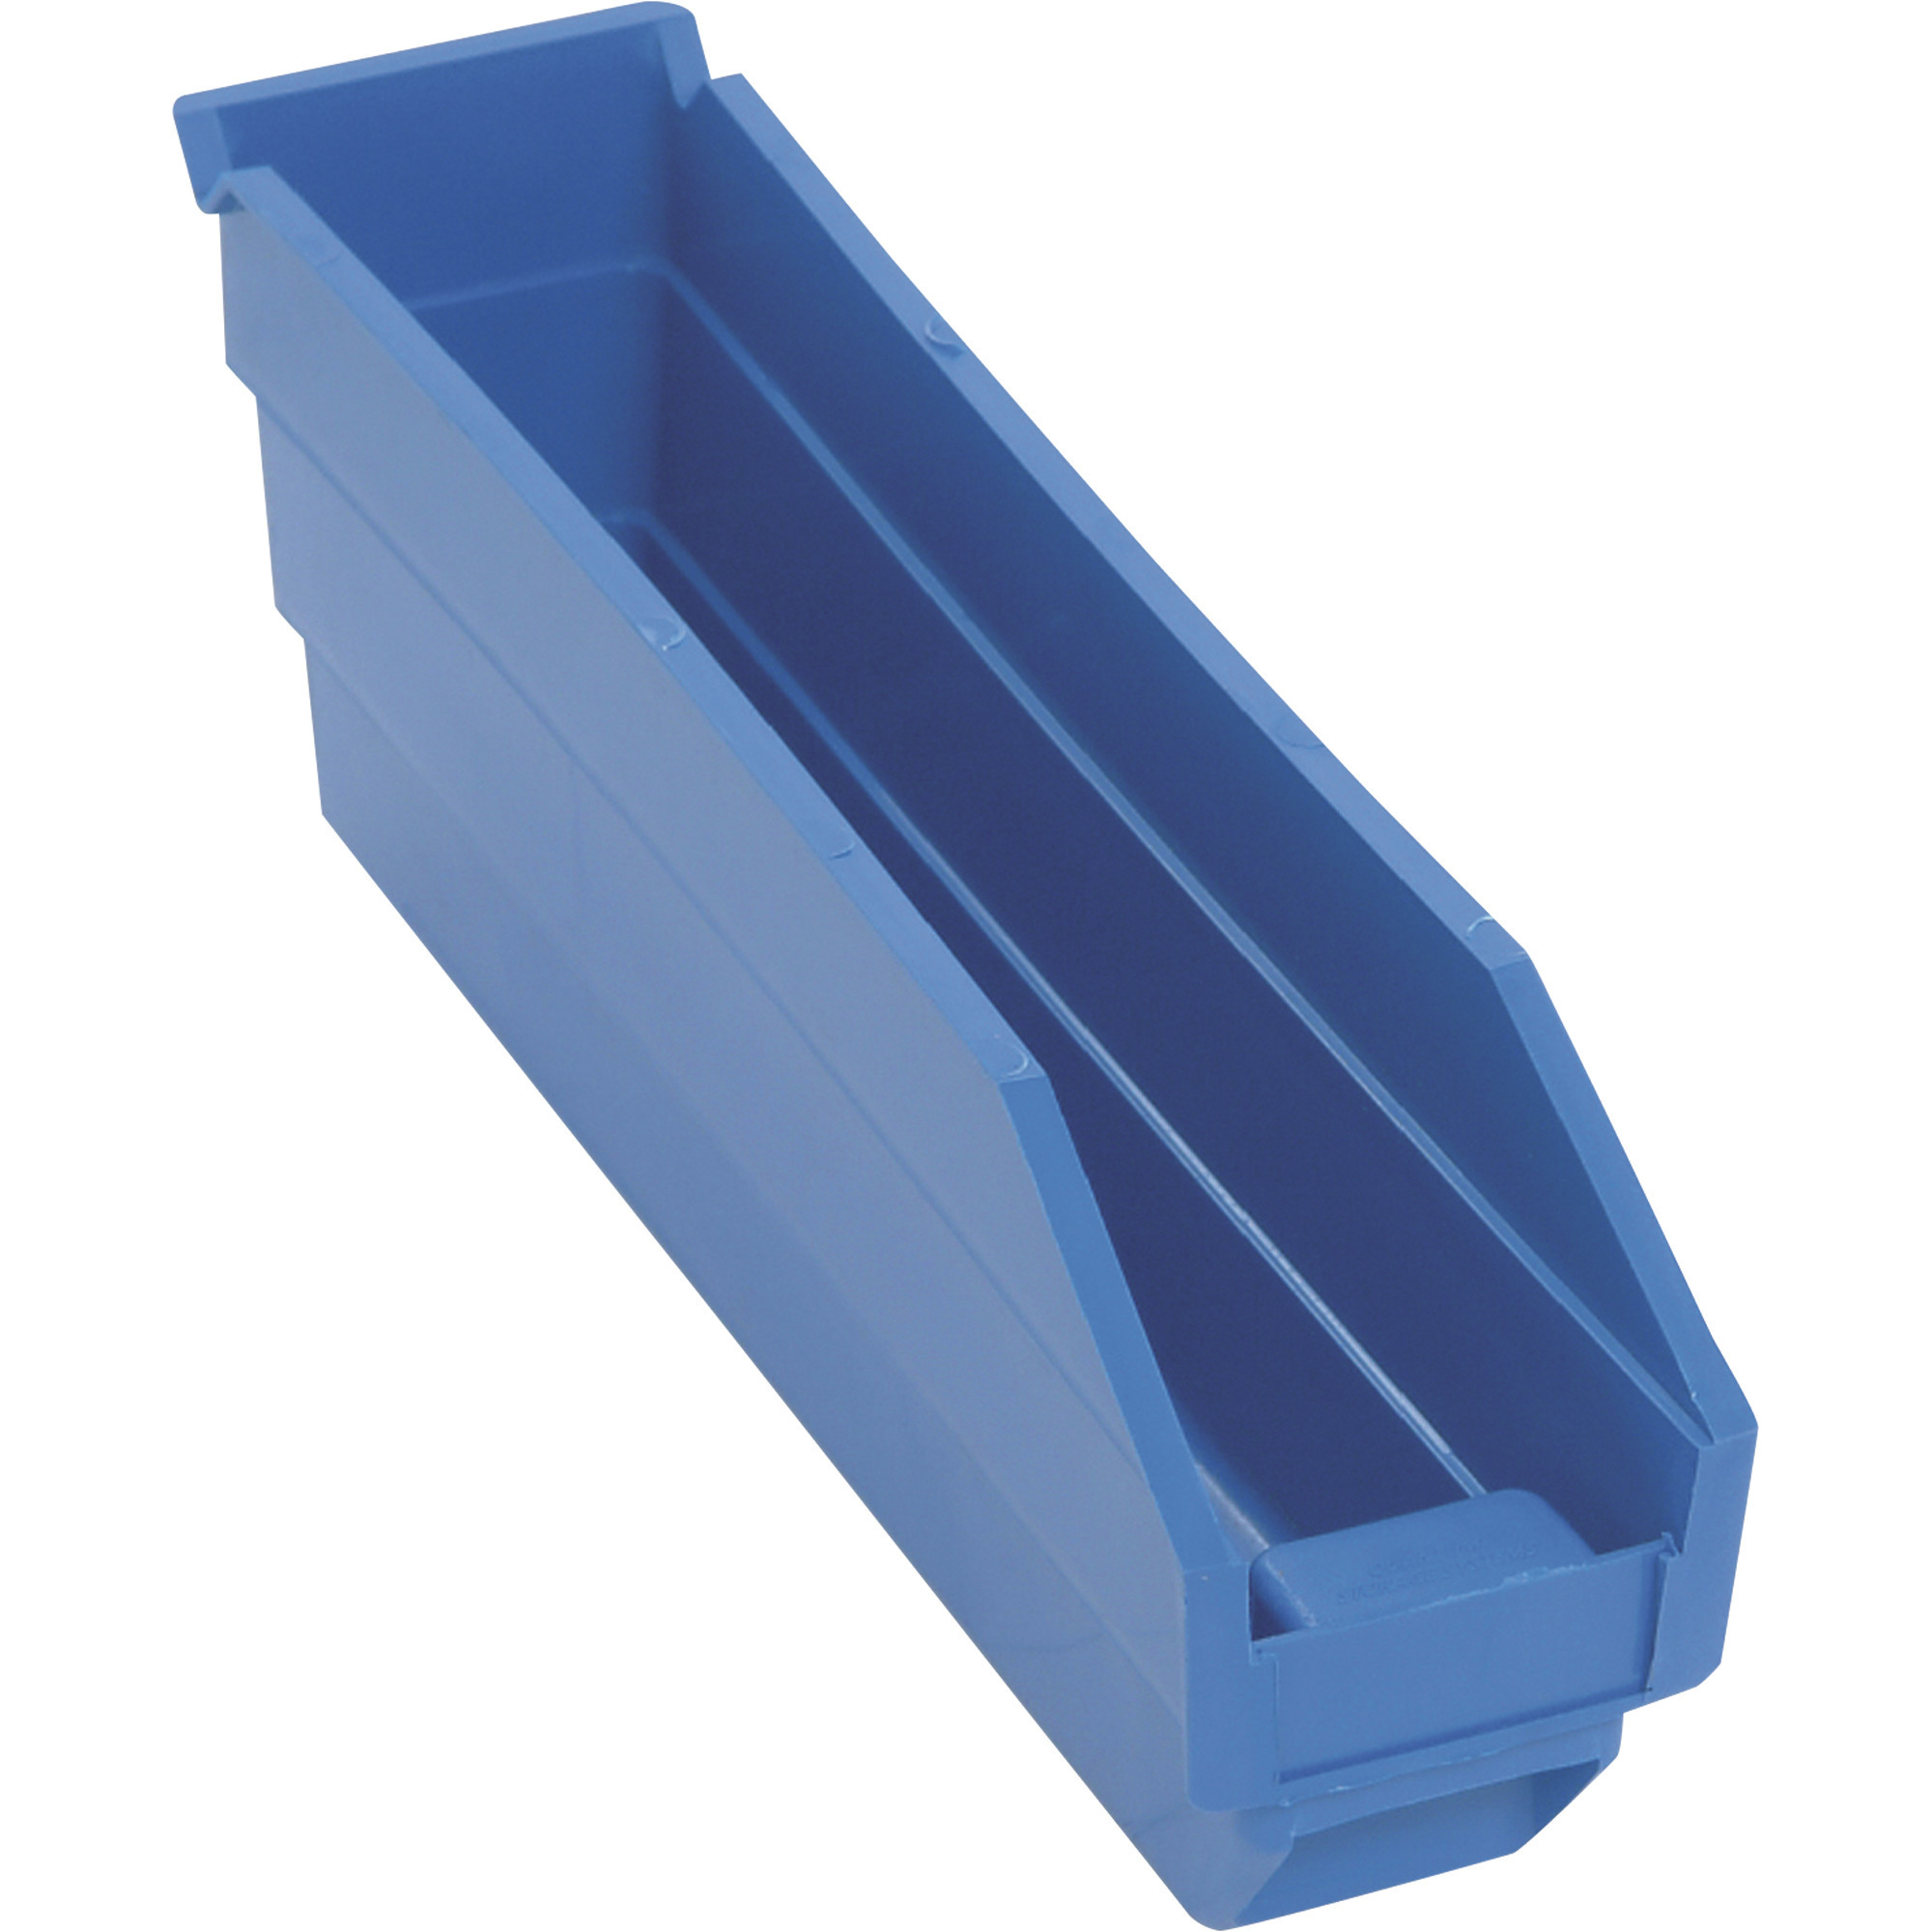 Shelf Bin Organizer - 36 x 18 x 39 with 11 x 18 x 4 Blue Bins H